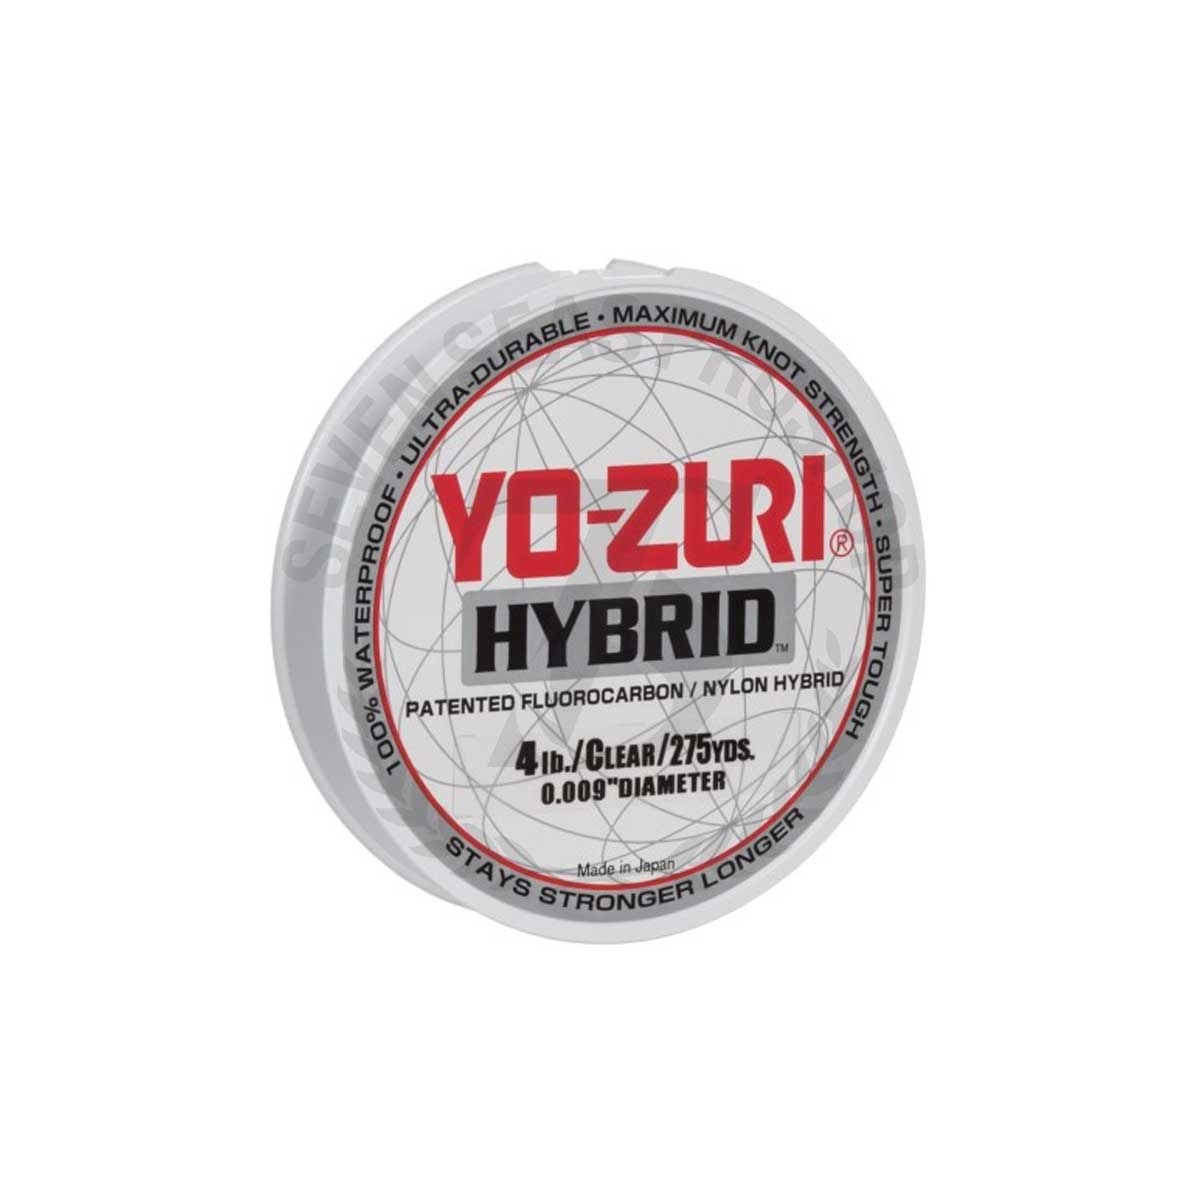 Yo-Zuri Hybrid 275Yd Clear #4lb*สายลีดฟลูออโรคาร์บอน - 7 SEAS